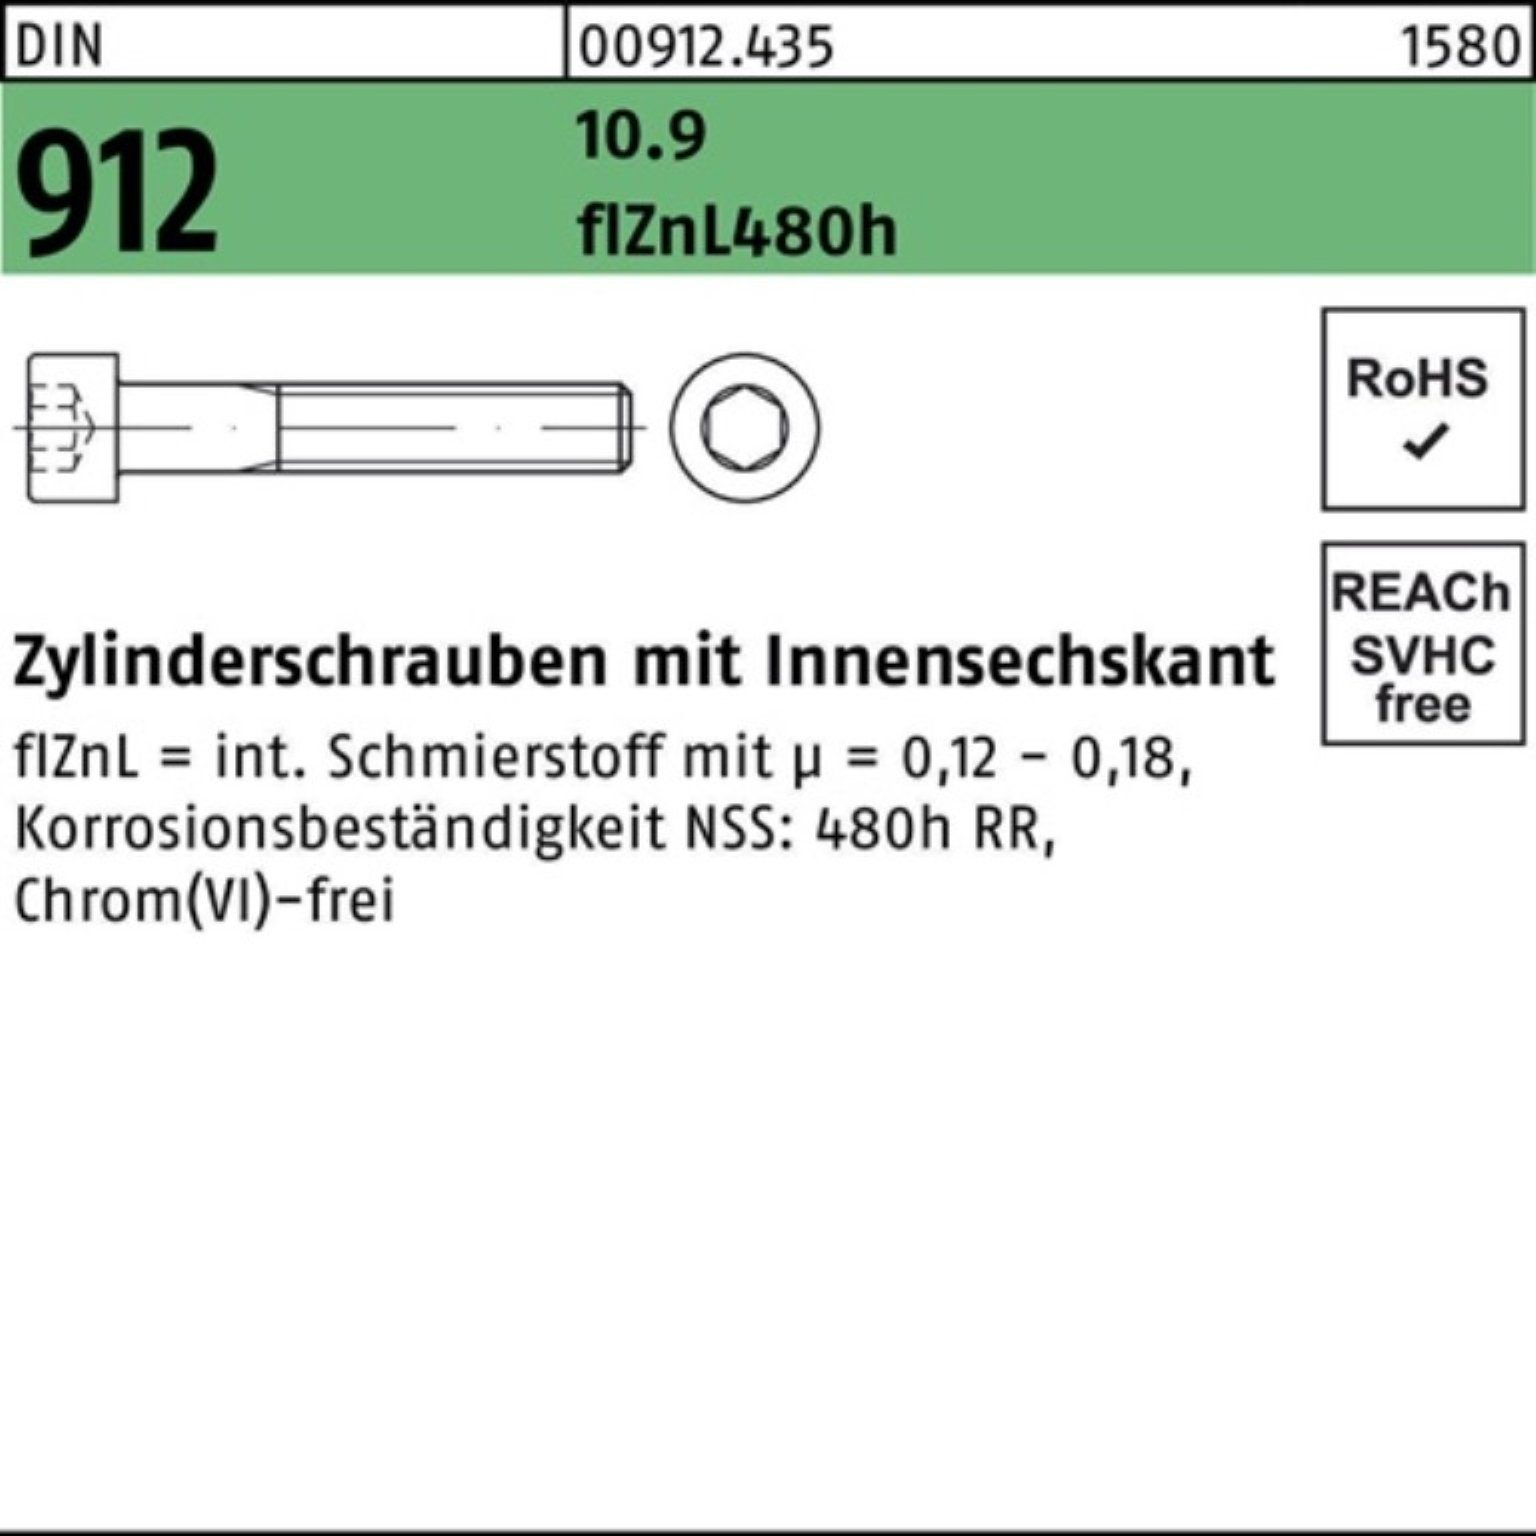 DIN 912 Zylinderschraube Pack 10.9 Innen-6kt Zylinderschraube Reyher flZnL/nc/x 100er M24x110